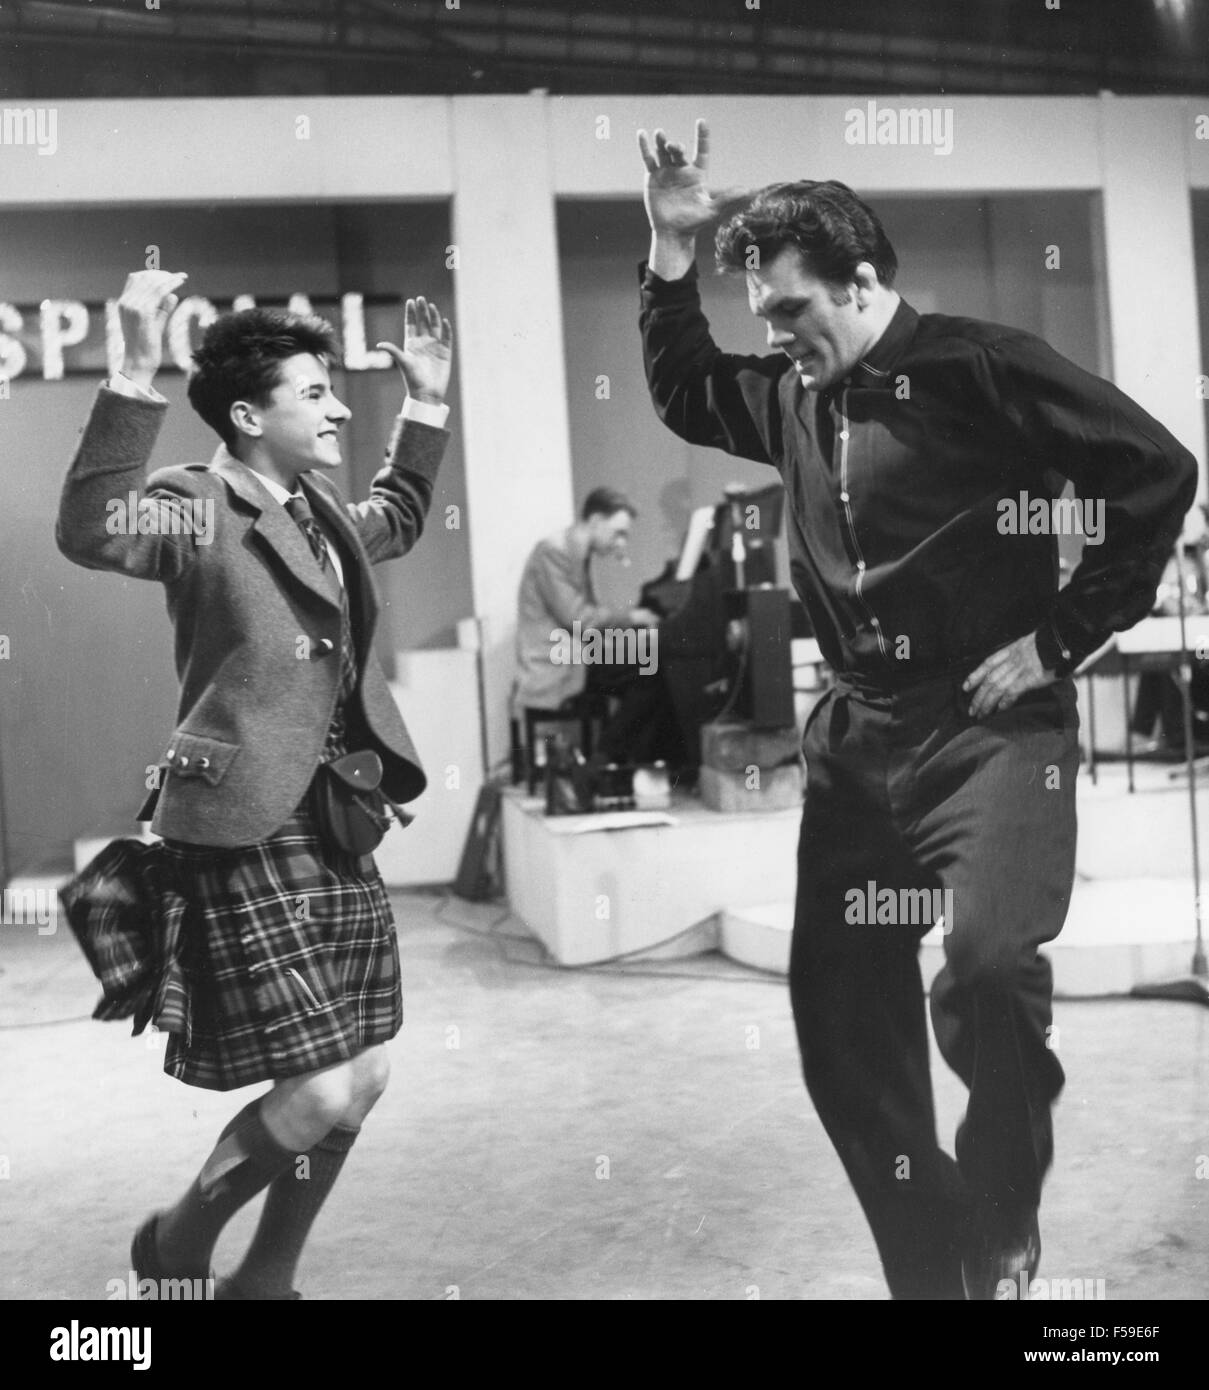 6 - 5 - SPECIALE - BBC musica pop programma nel 1957. Confronta Freddie Mills danze con la cantante scozzese Jackie Dennis a sinistra Foto Stock